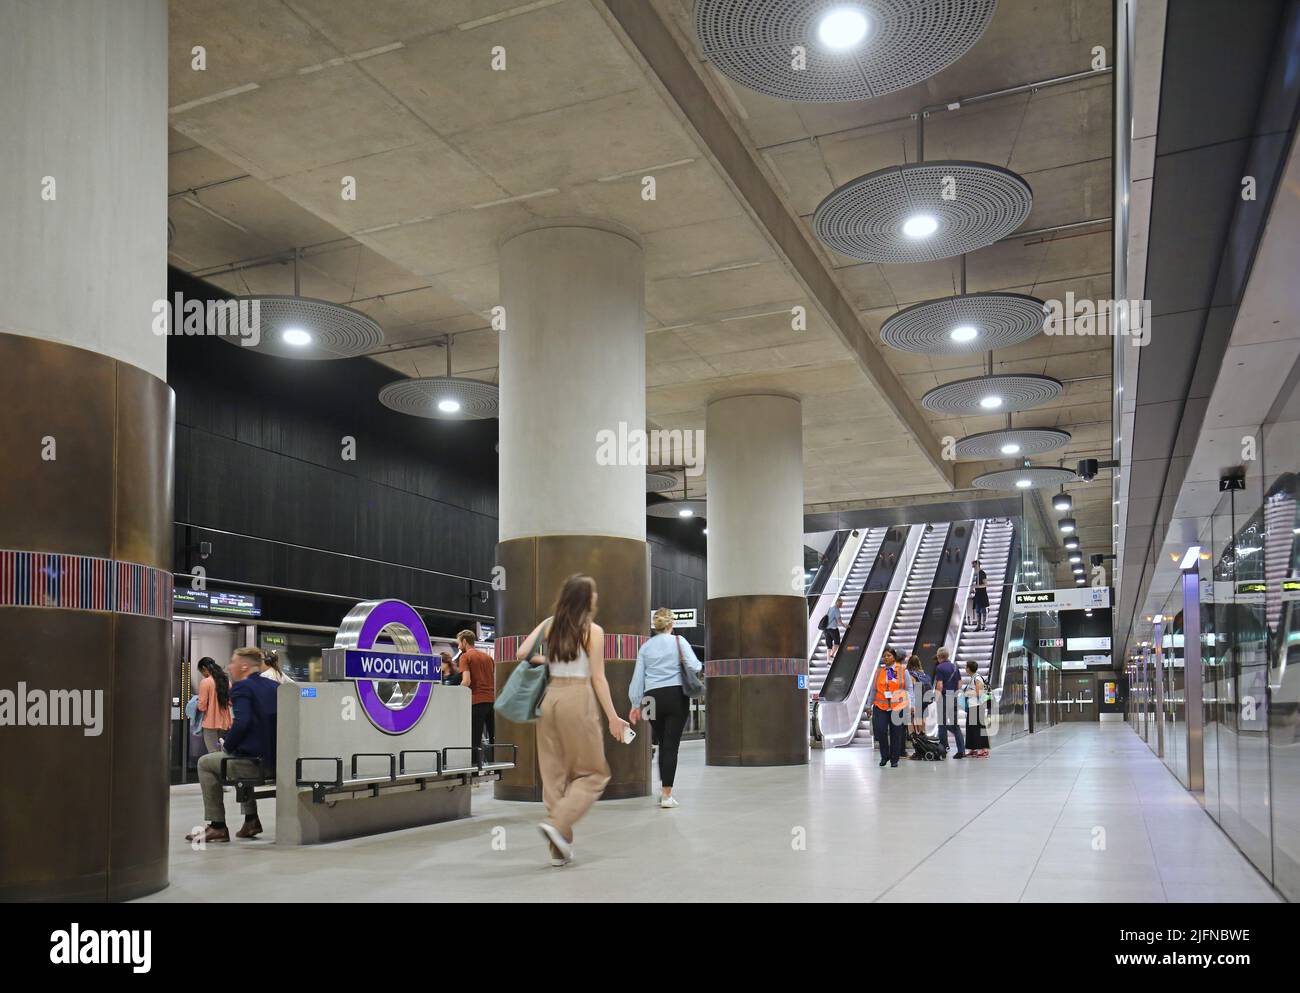 Londres, Royaume-Uni. Woolwich Station sur le réseau ferroviaire souterrain Elizabeth Line (crossrail) récemment ouvert. Niveau de la plate-forme, montre les trains et les escaliers mécaniques. Banque D'Images